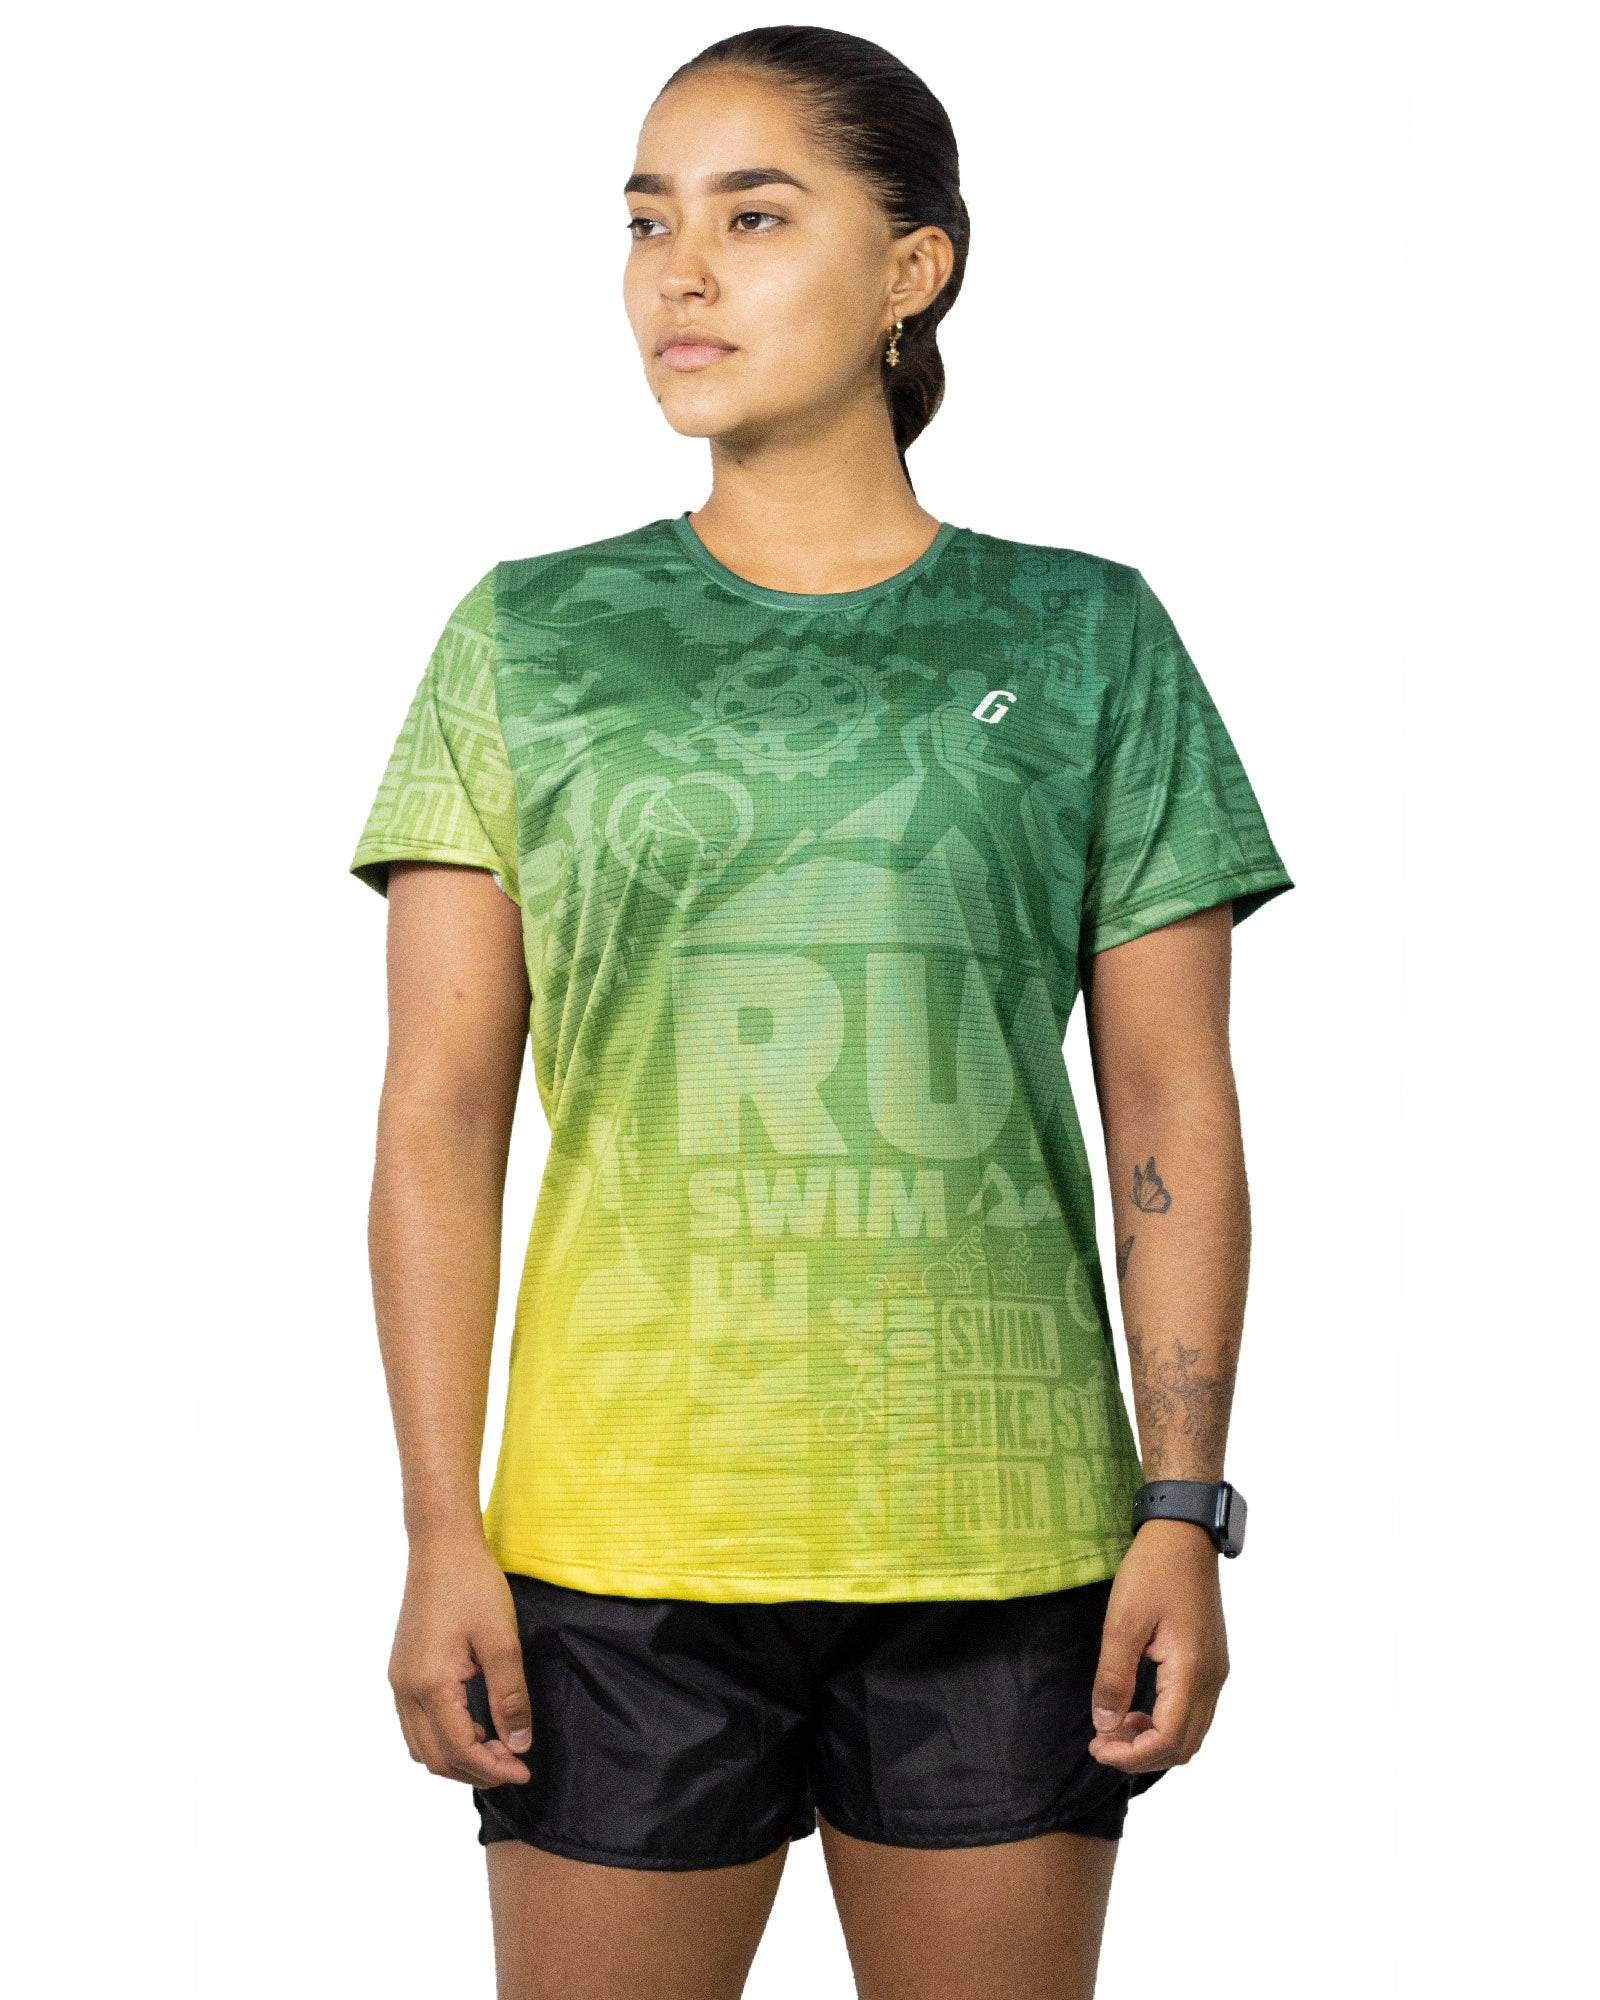 Camiseta Running Mujer